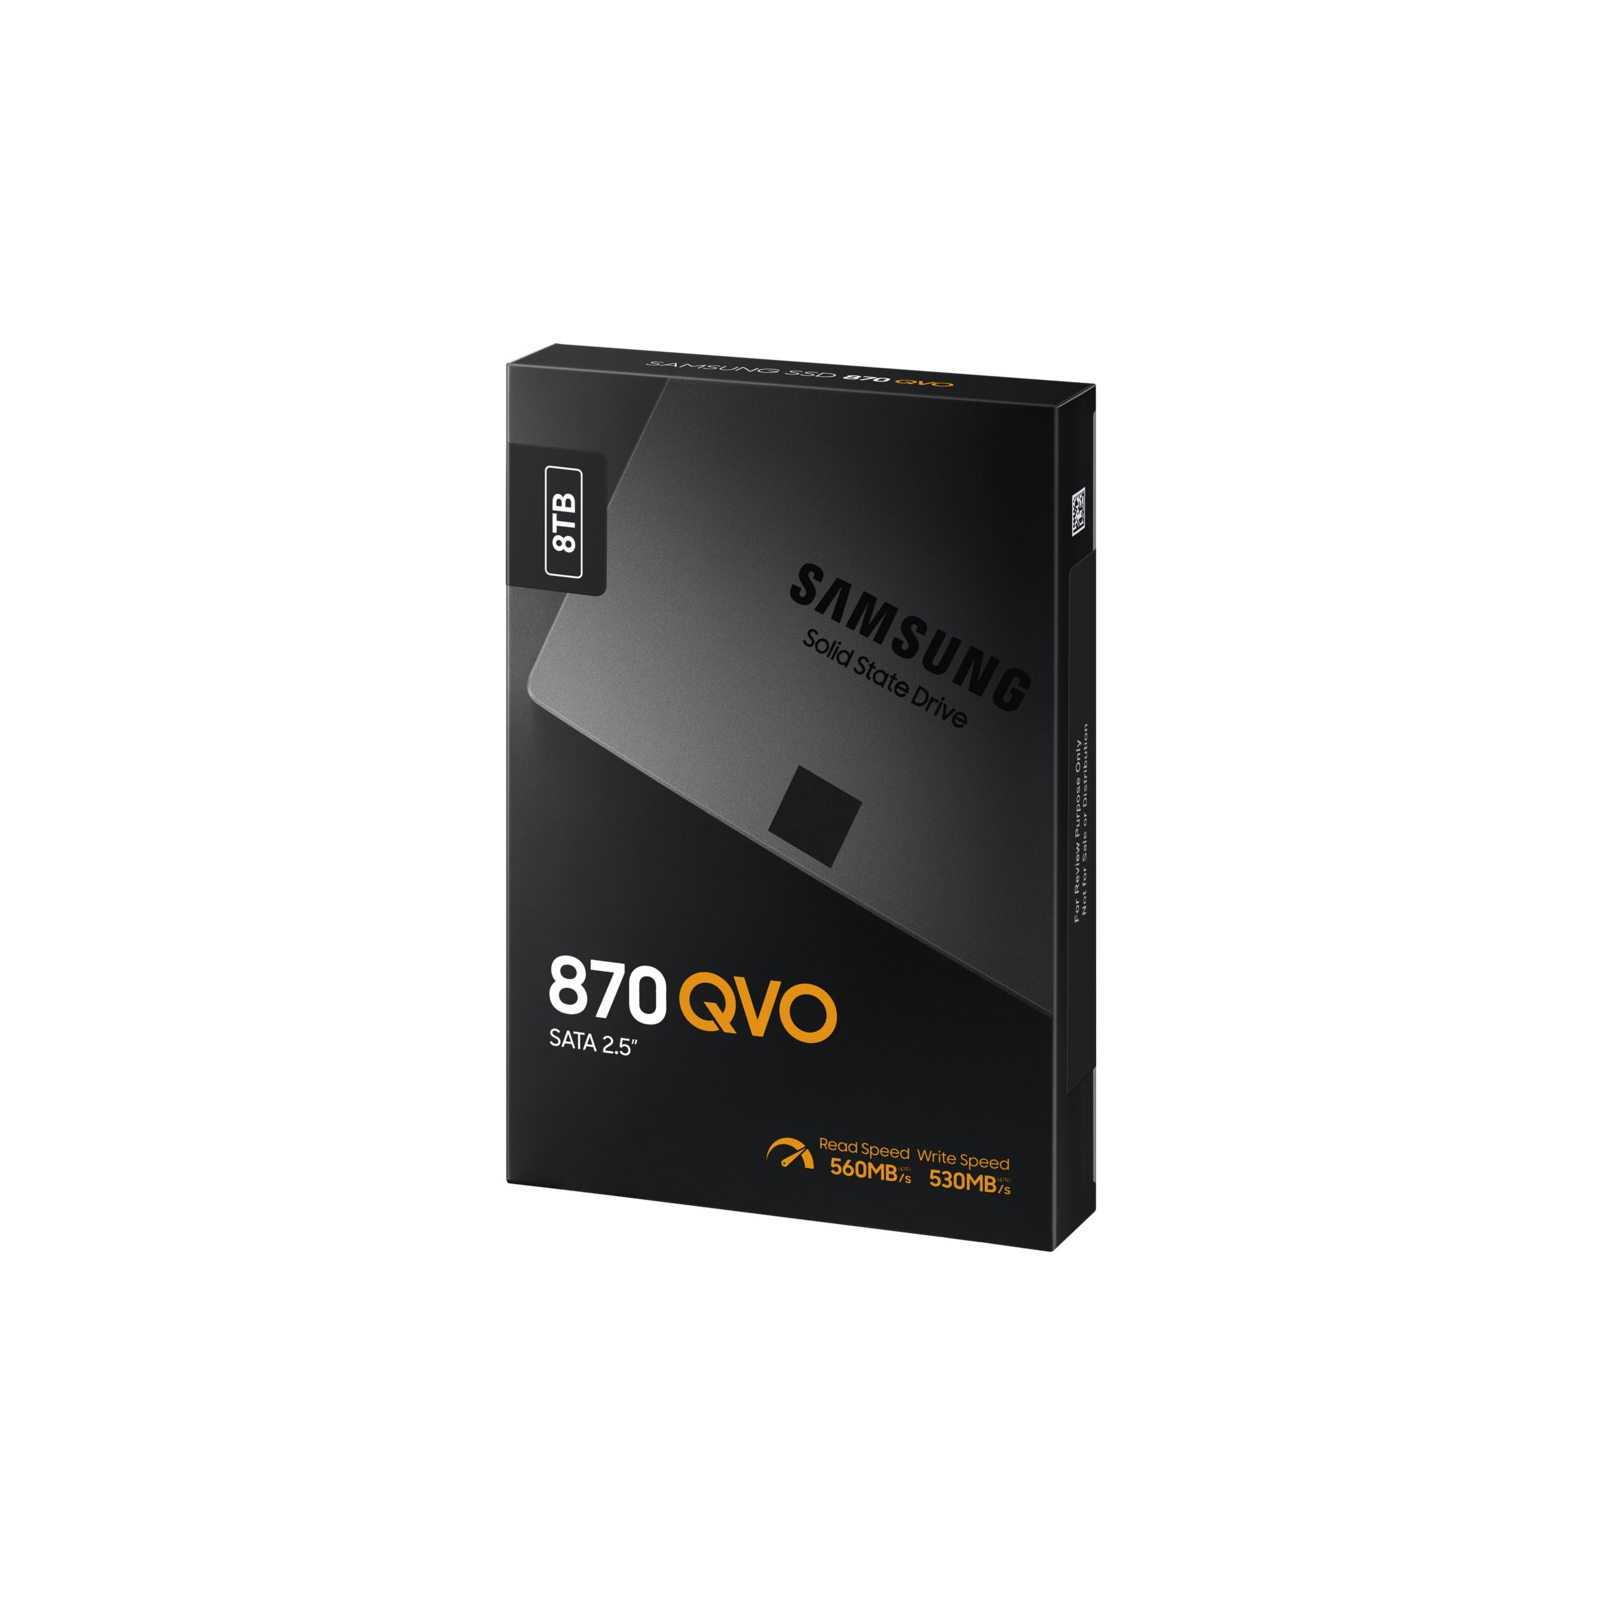 Накопичувач SSD 2.5" 2TB Samsung (MZ-77Q2T0BW) зображення 6